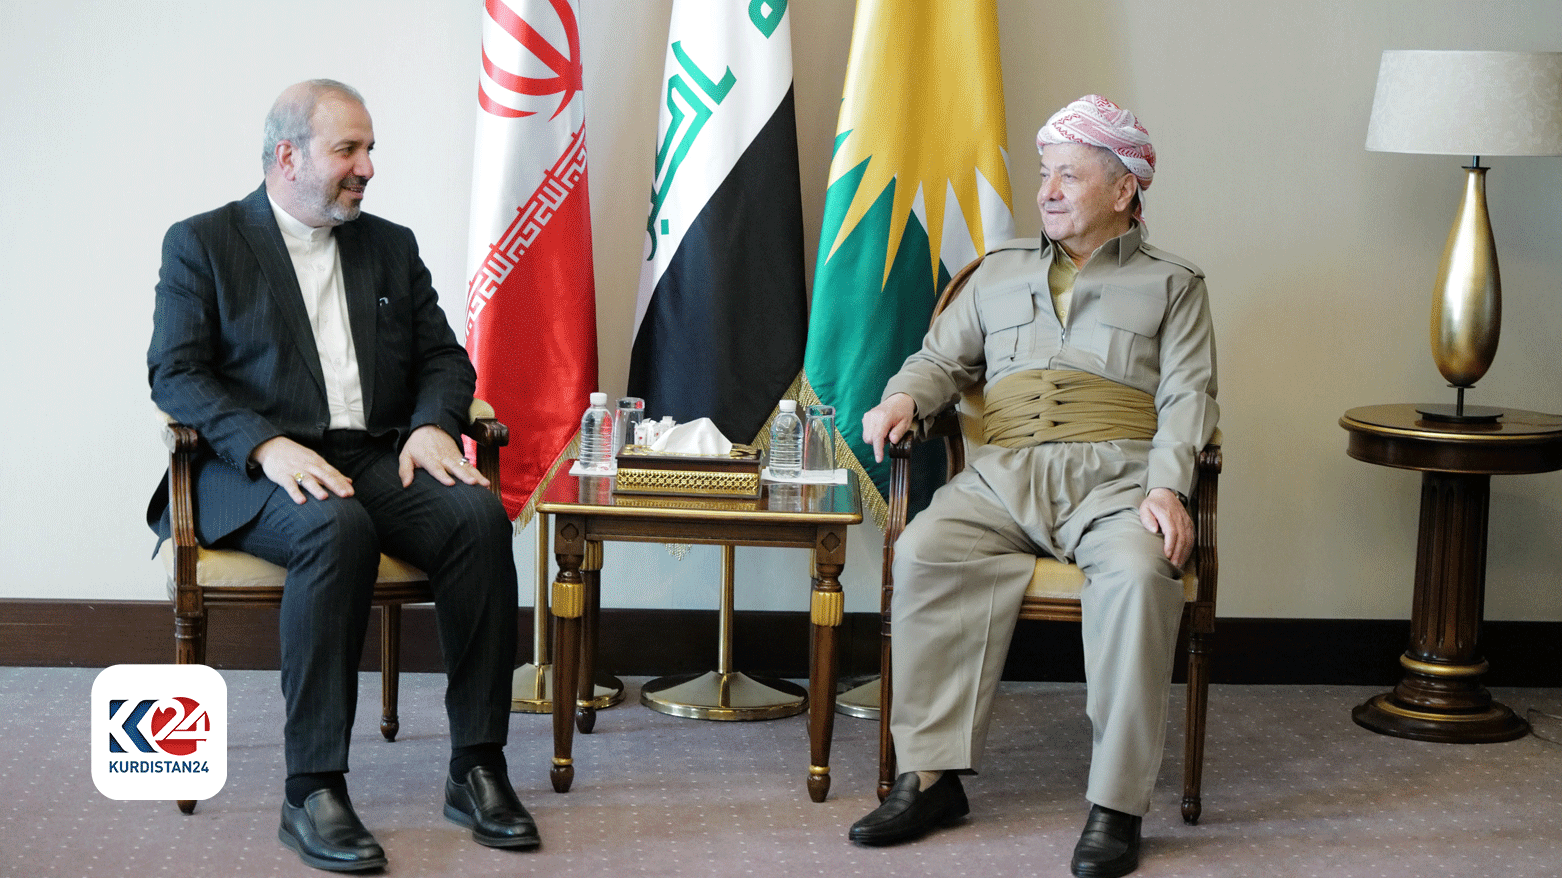 Nechirvan Barzani requests Austria to open consulate in Erbil